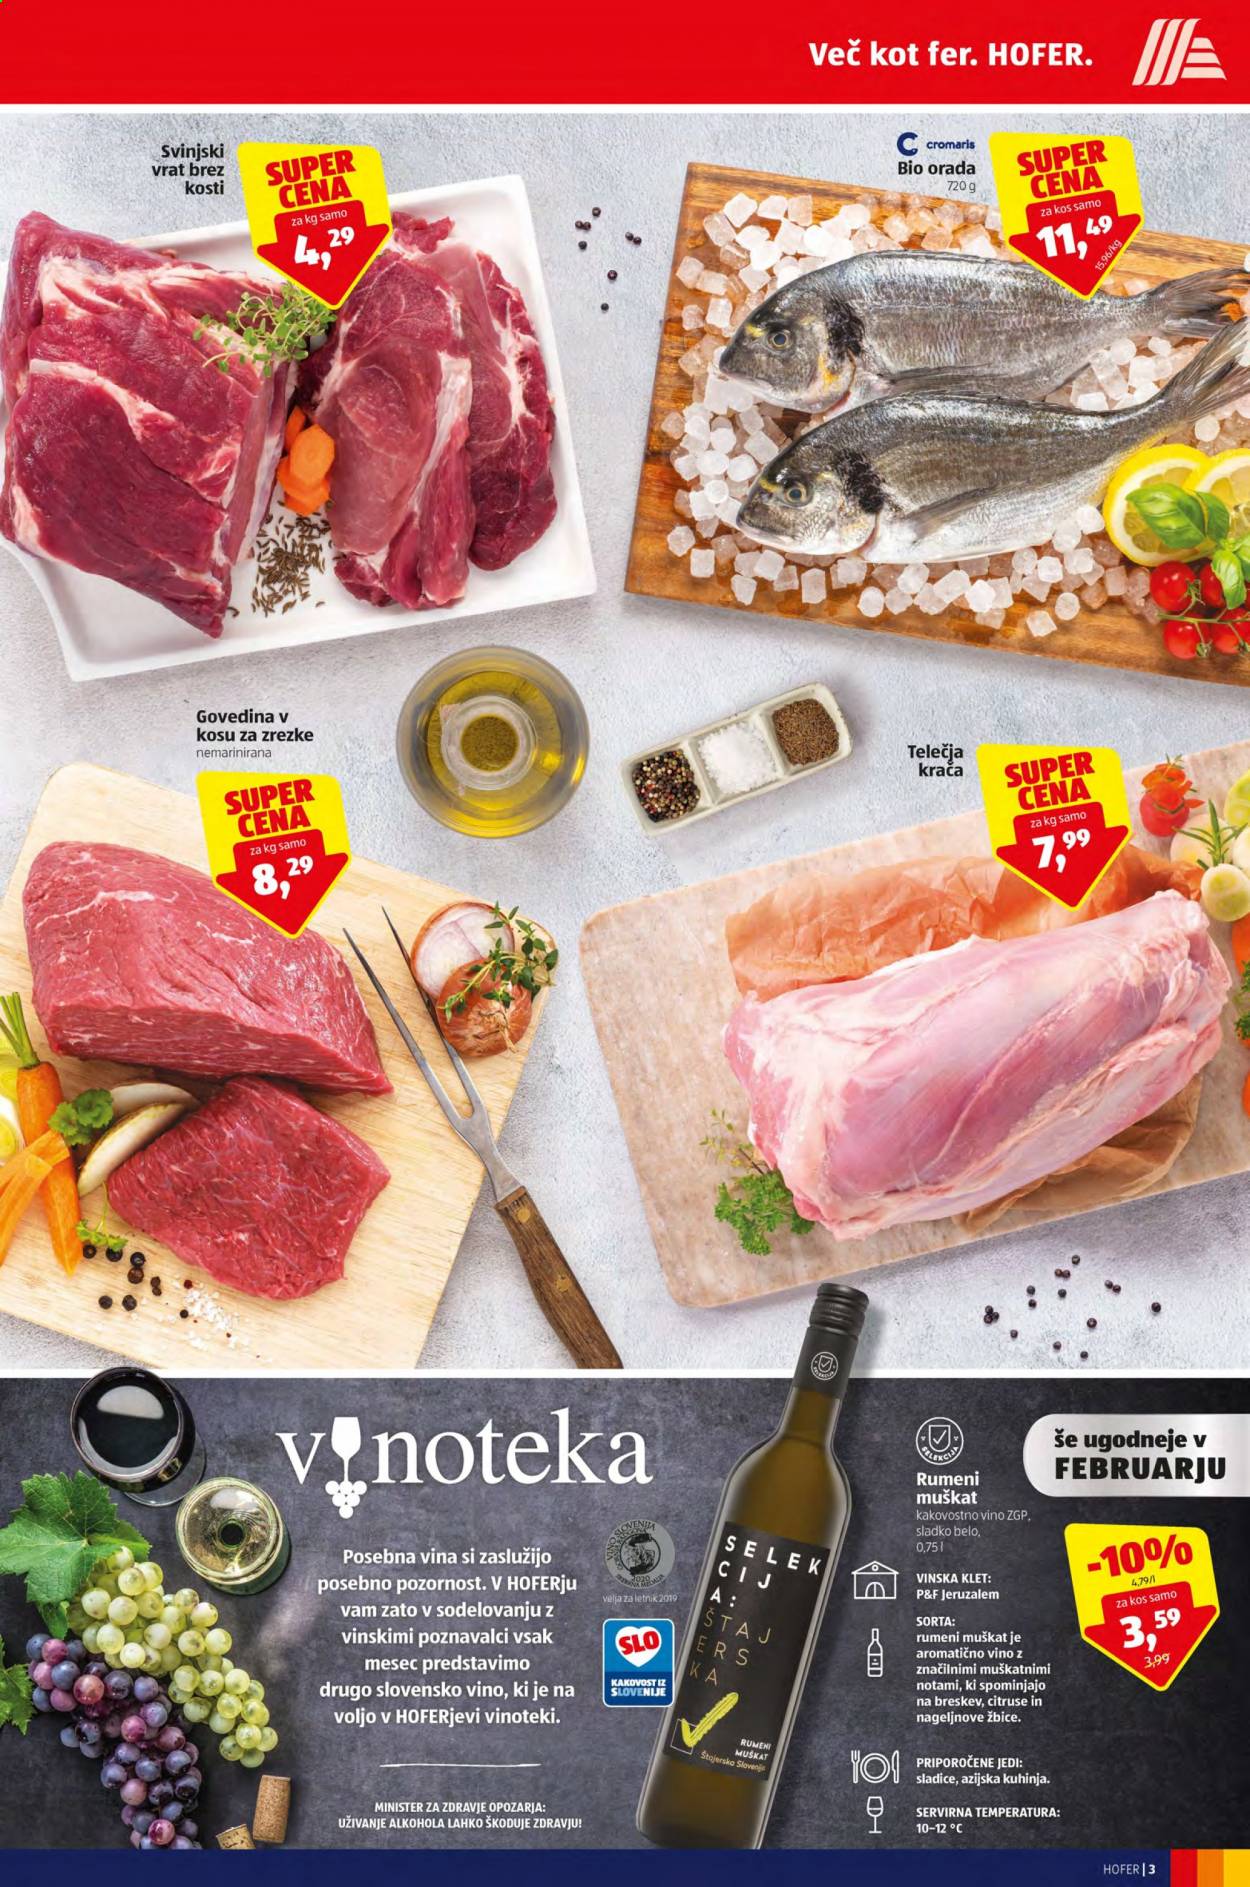 thumbnail - Hofer katalog - 5.2.2021 - 13.2.2021 - Ponudba izdelkov - goveje meso, svinjski vrat brez kosti, svinjsko meso, Muškat, vino. Stran 3.